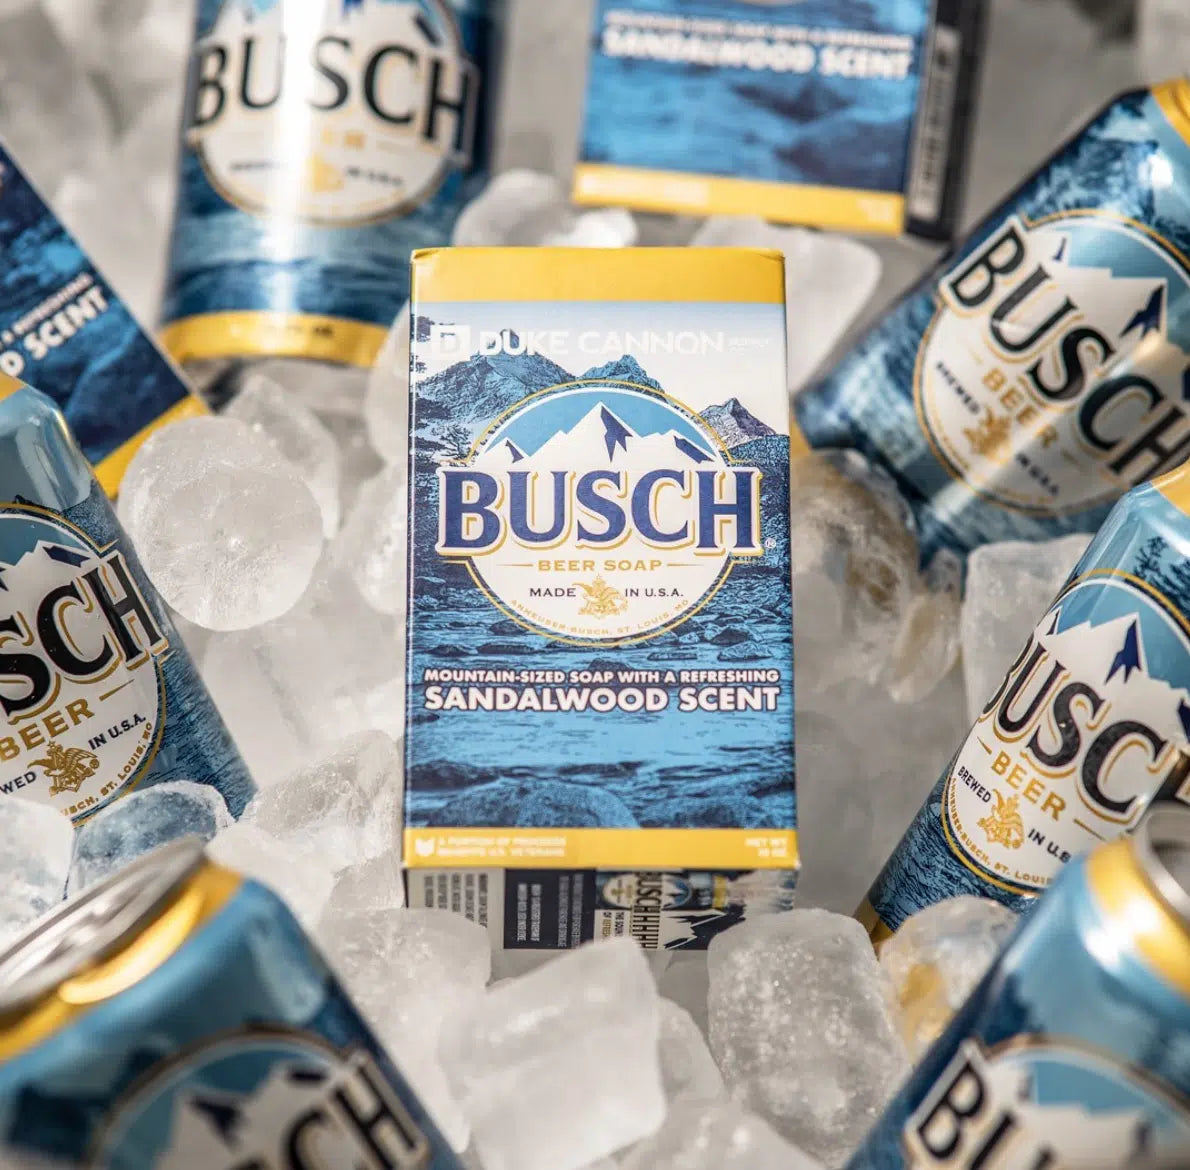 Busch Beer Soap - Duke Cannon Soap Bar